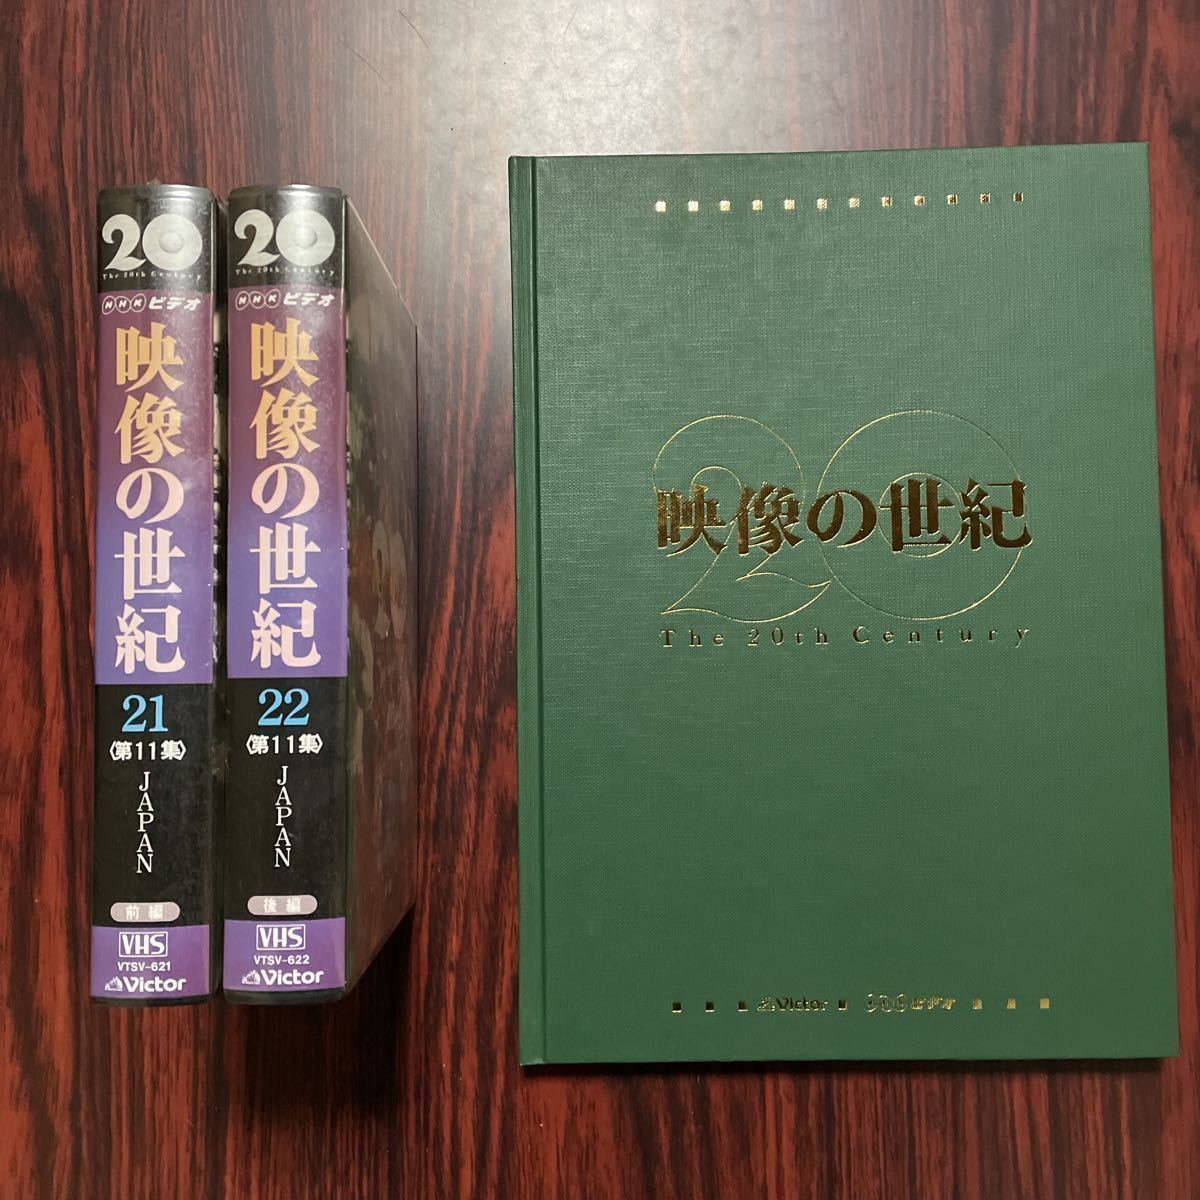 VHS изображение. век все 22 шт нераспечатанный брошюра имеется NHK